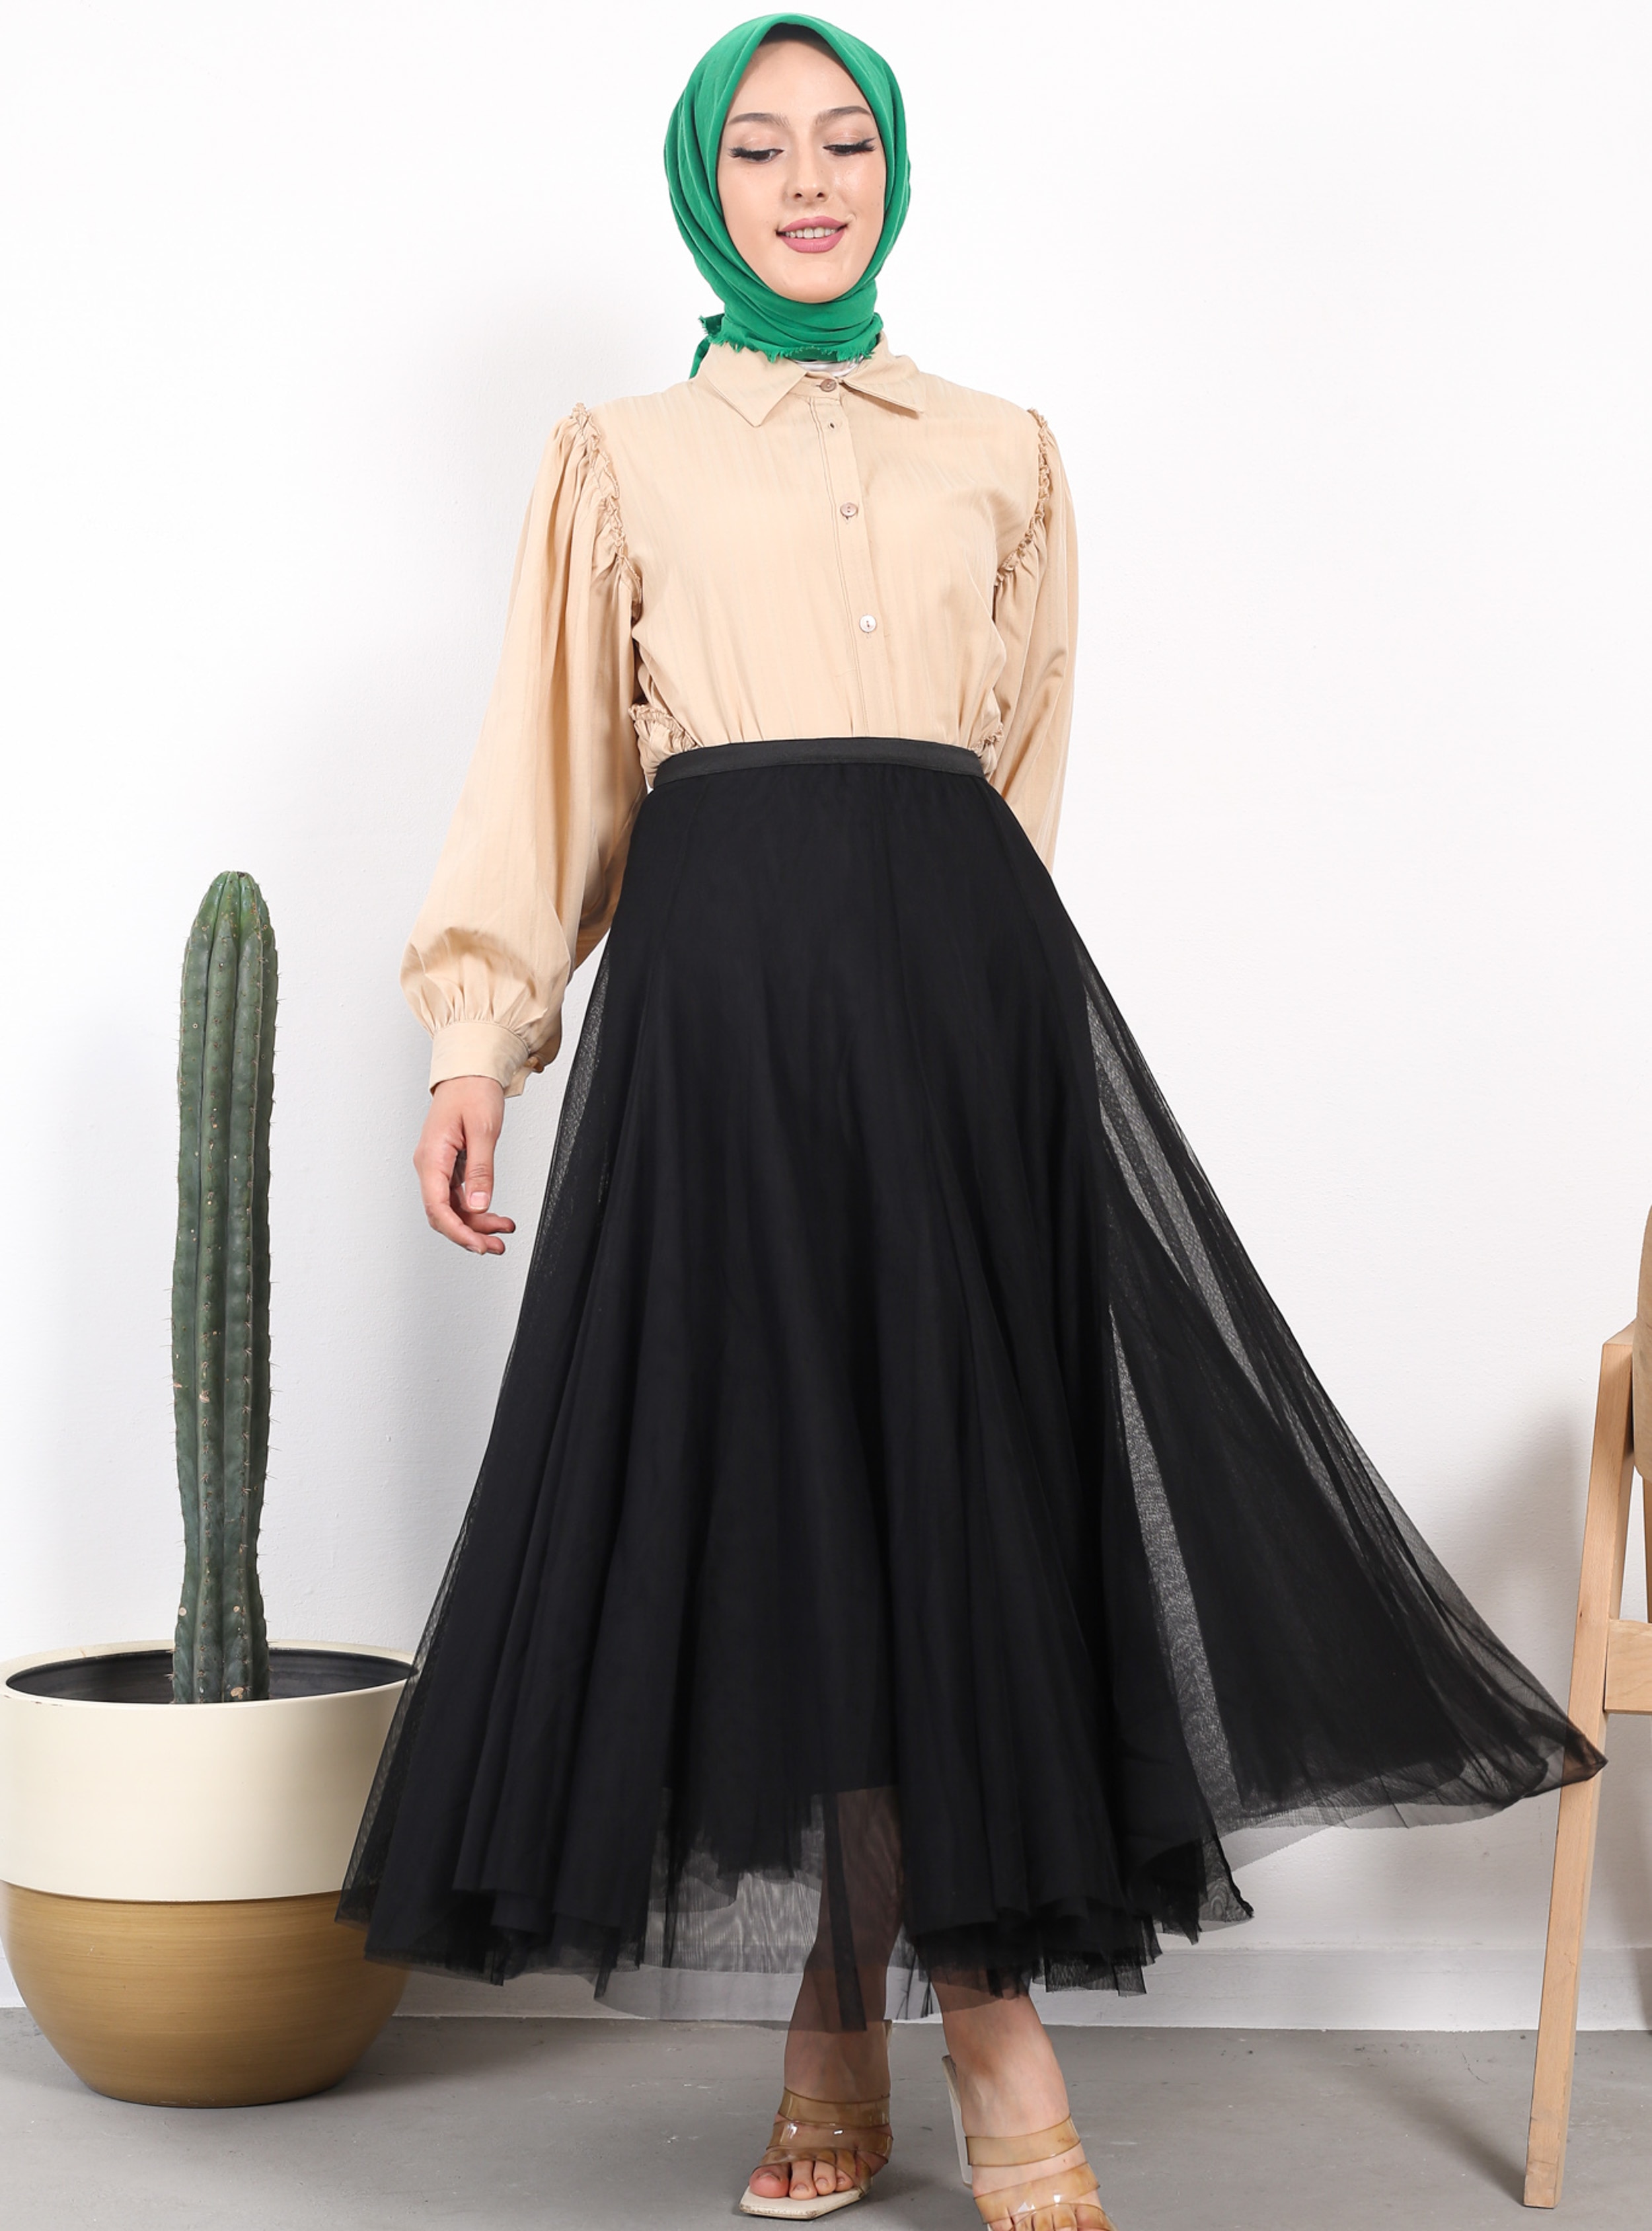 Black - Fully Lined - Skirt